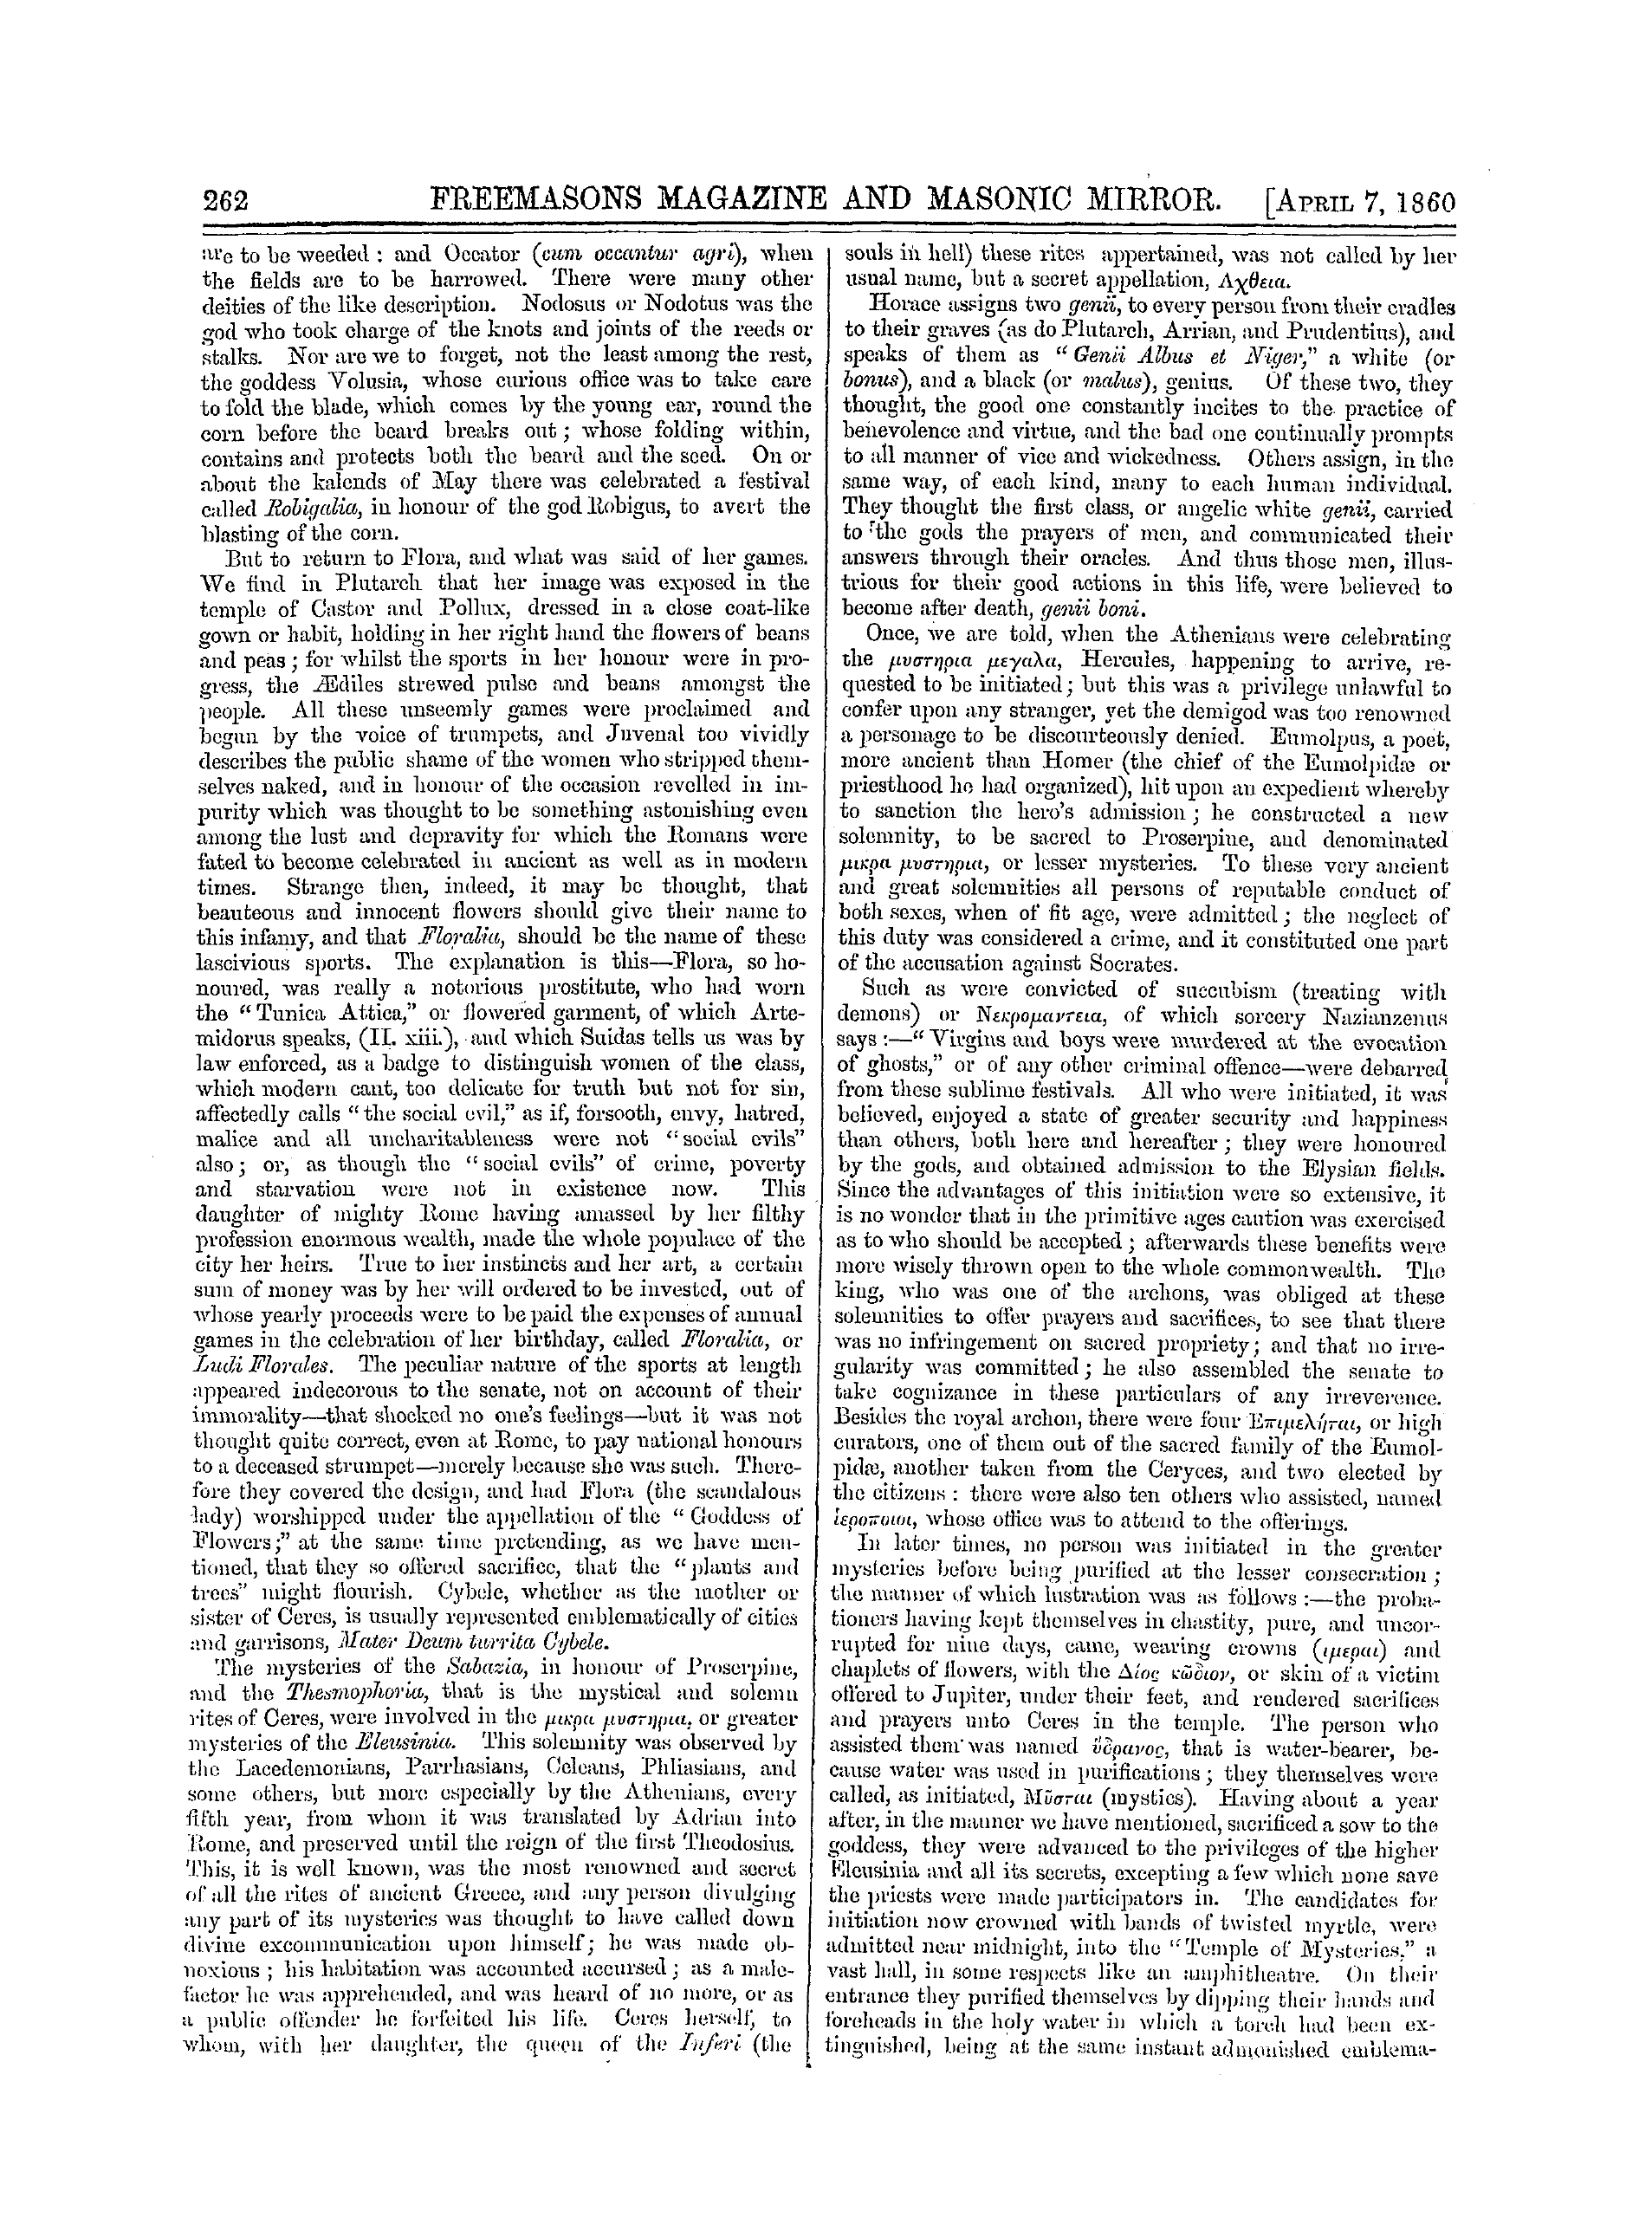 The Freemasons' Monthly Magazine: 1860-04-07: 2